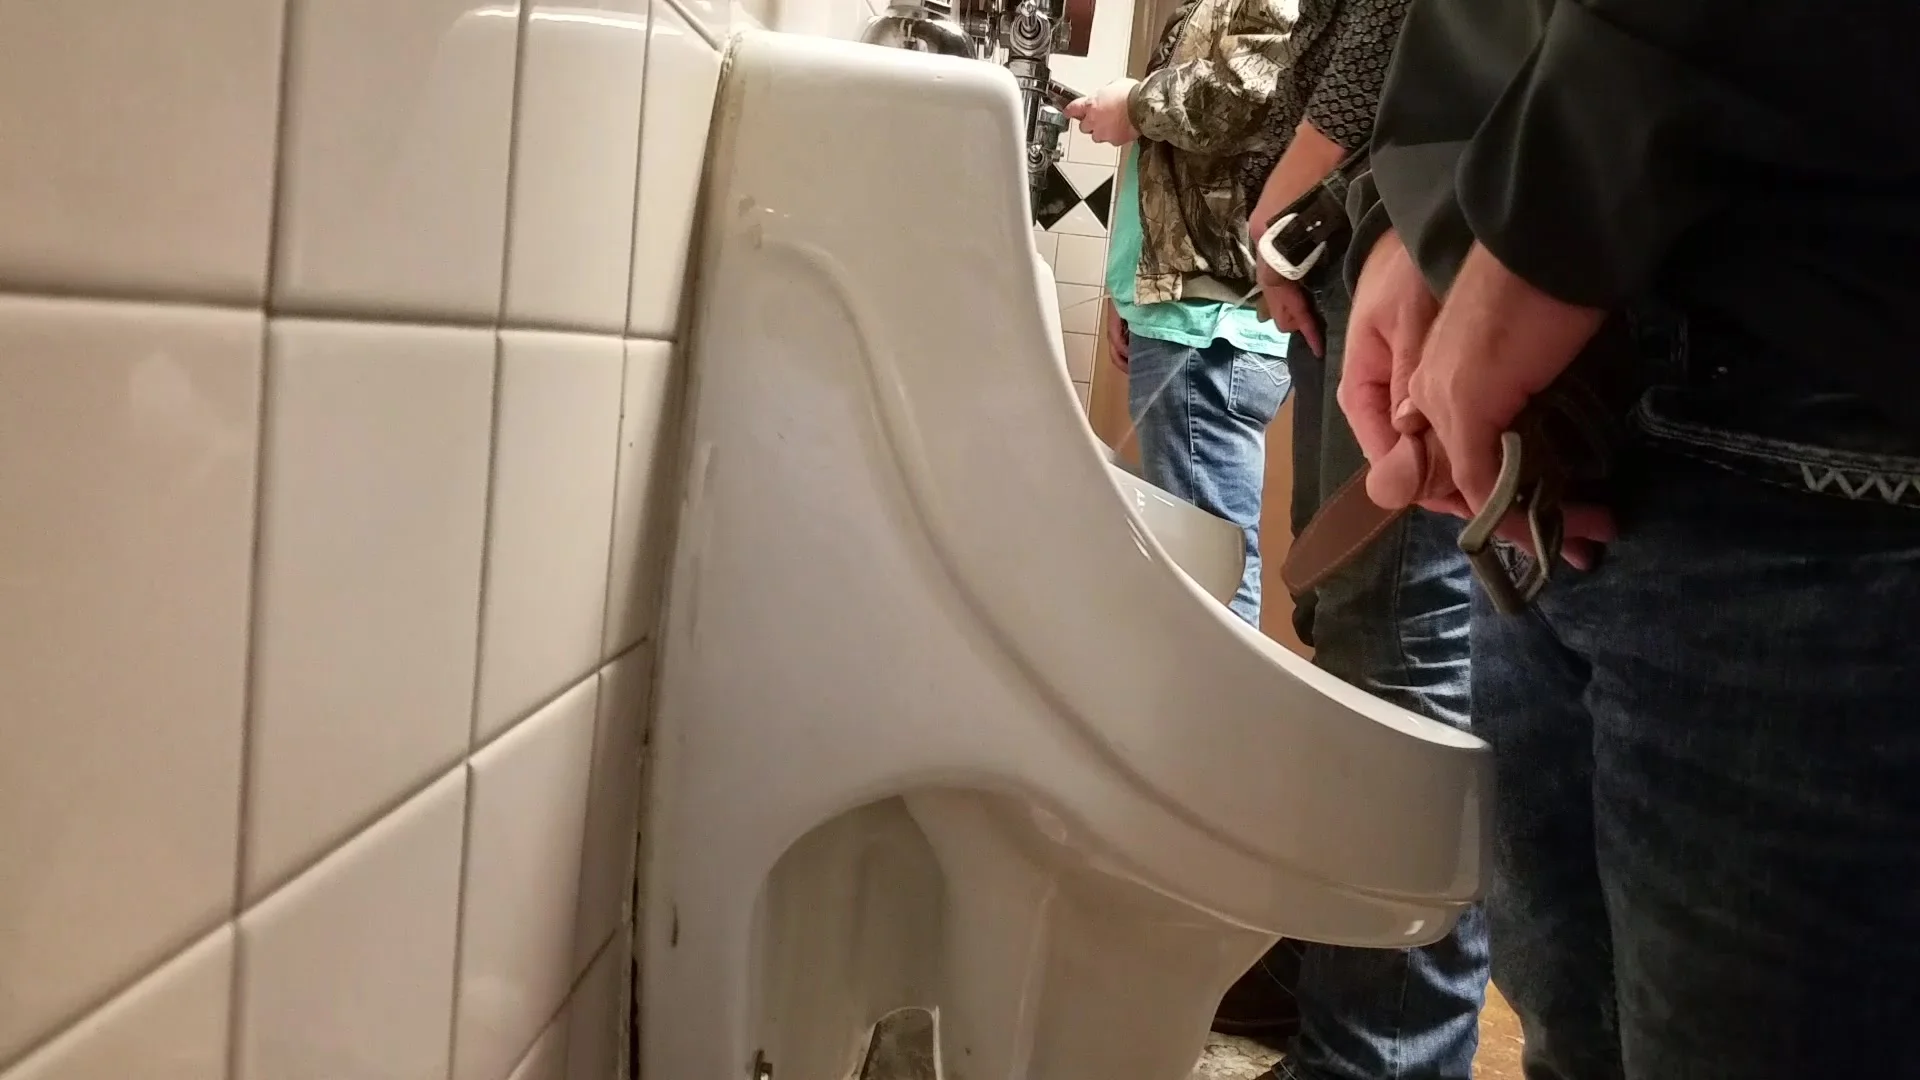 mens toilet voyeur peeing